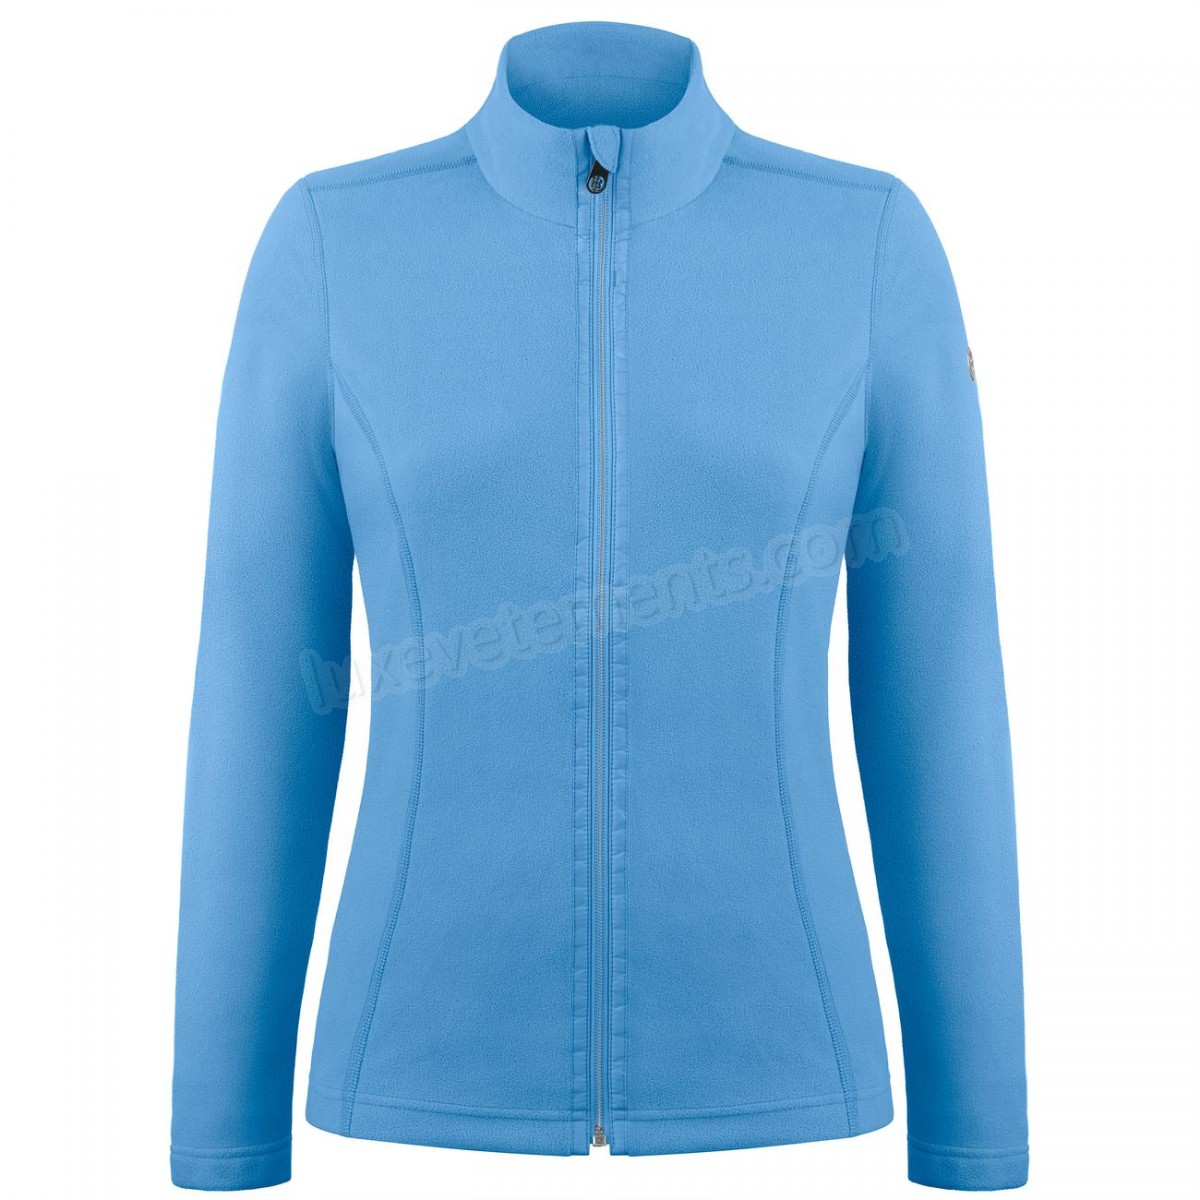 Poivre Blanc-Sports d'hiver femme POIVRE BLANC Veste Polaire Poivre Blanc Fleece Jacket 1500 Polar Blue Femme Vente en ligne - -6